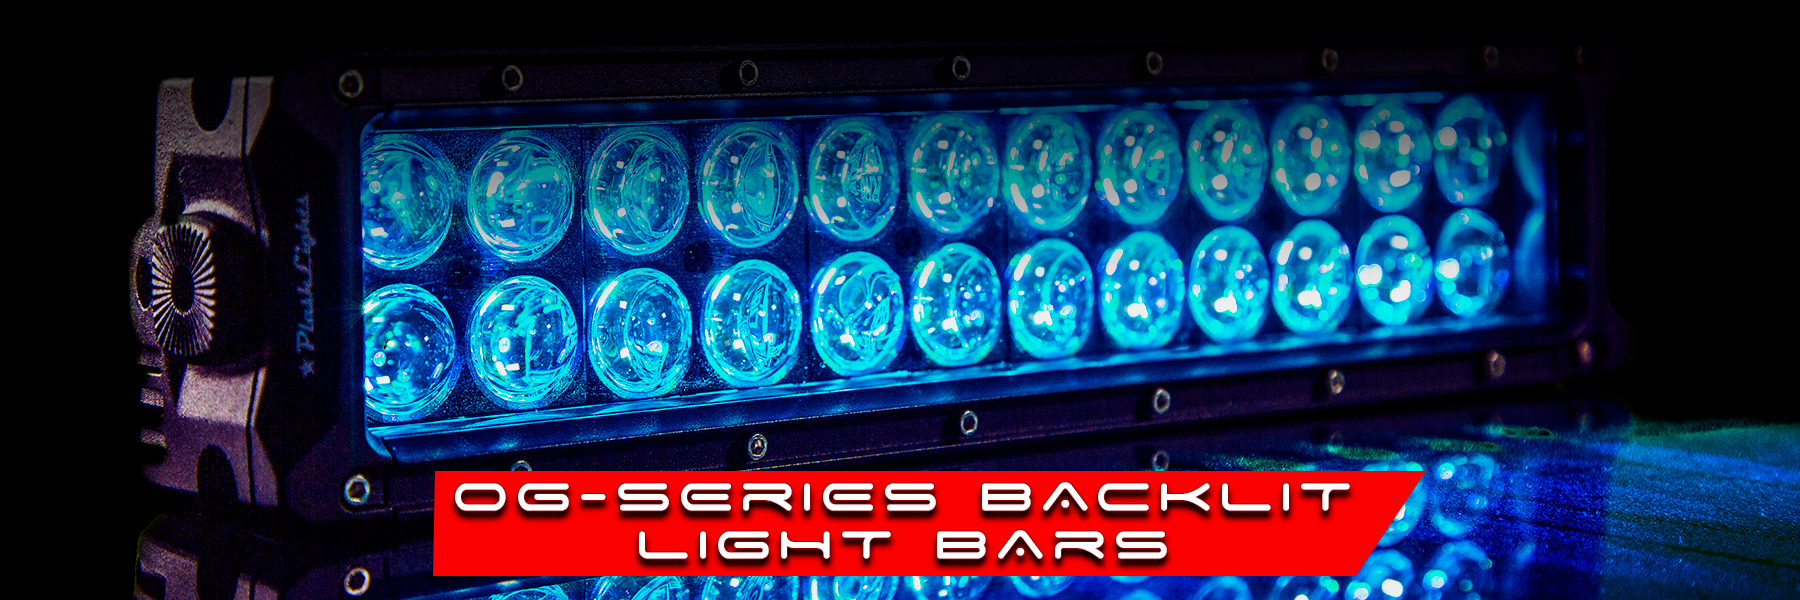 OG-Series Back Lit Light Bars